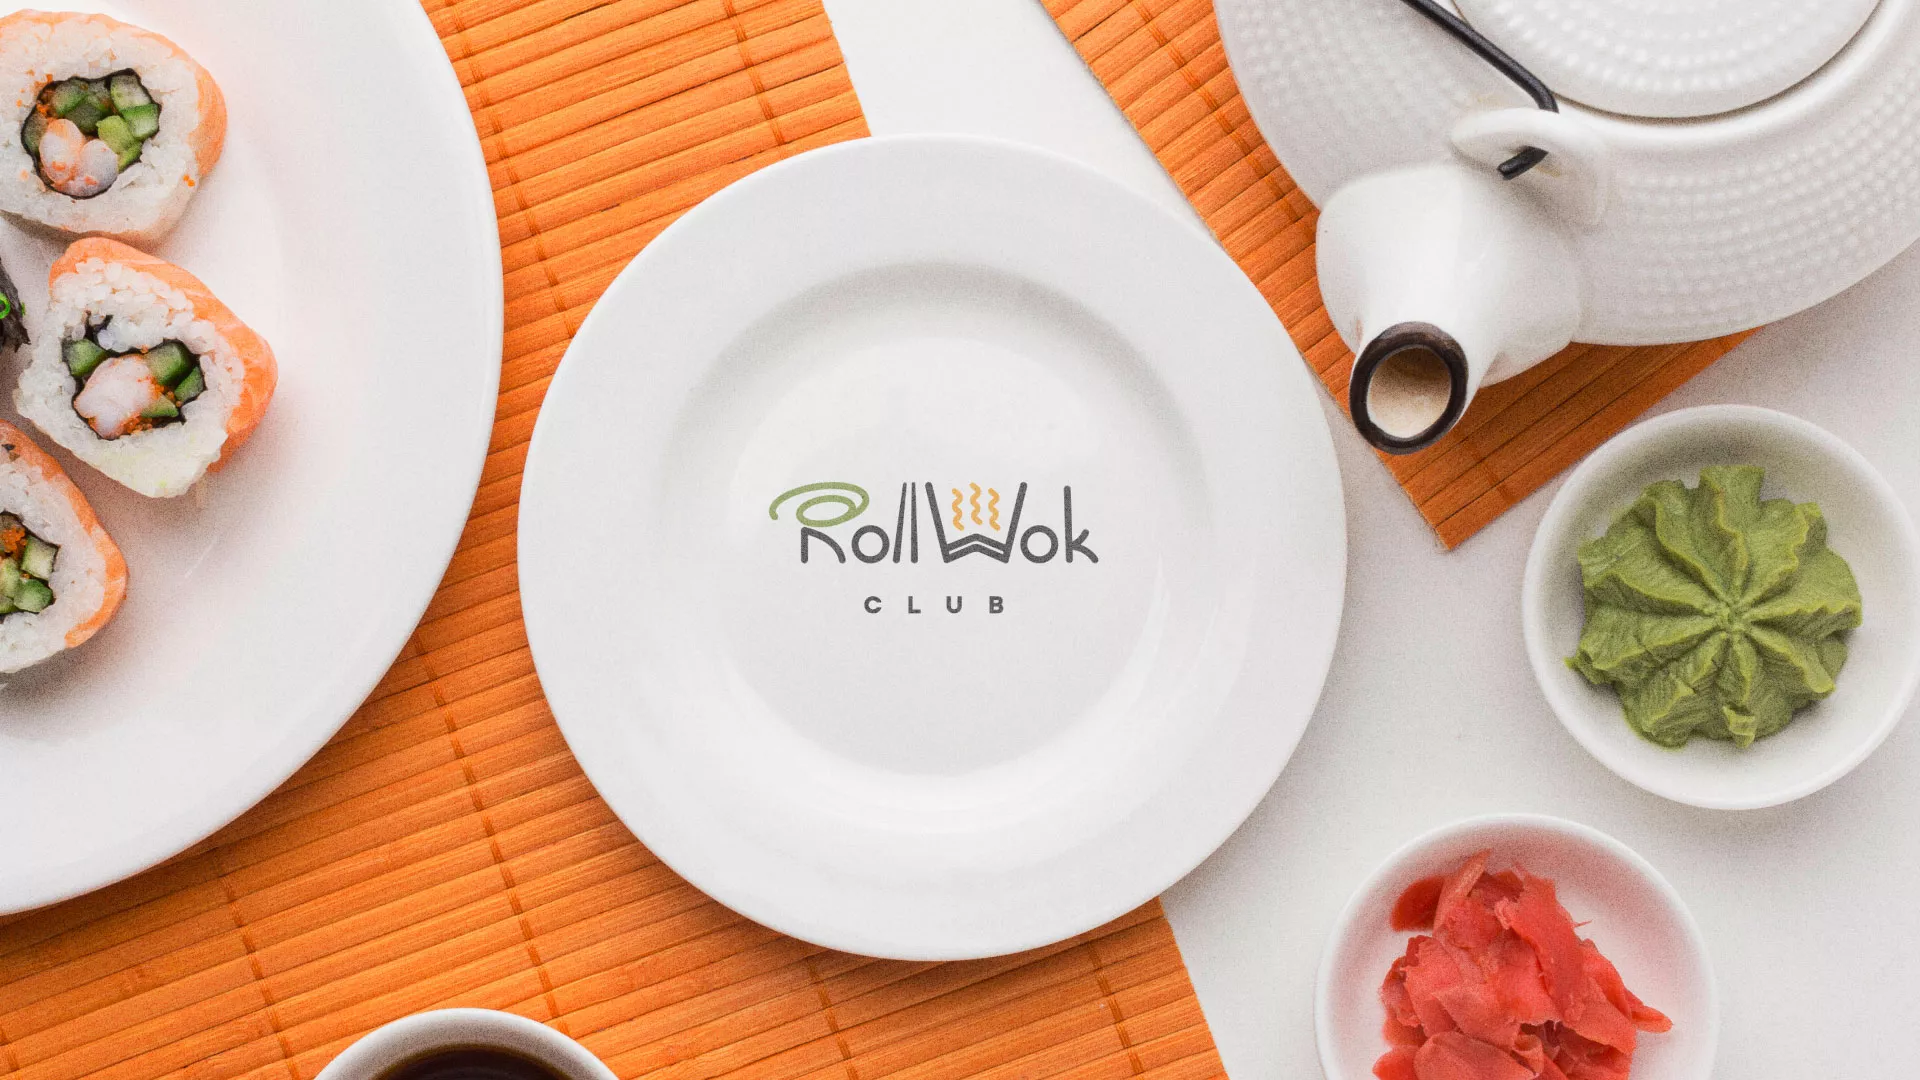 Разработка логотипа и фирменного стиля суши-бара «Roll Wok Club» в Азнакаево